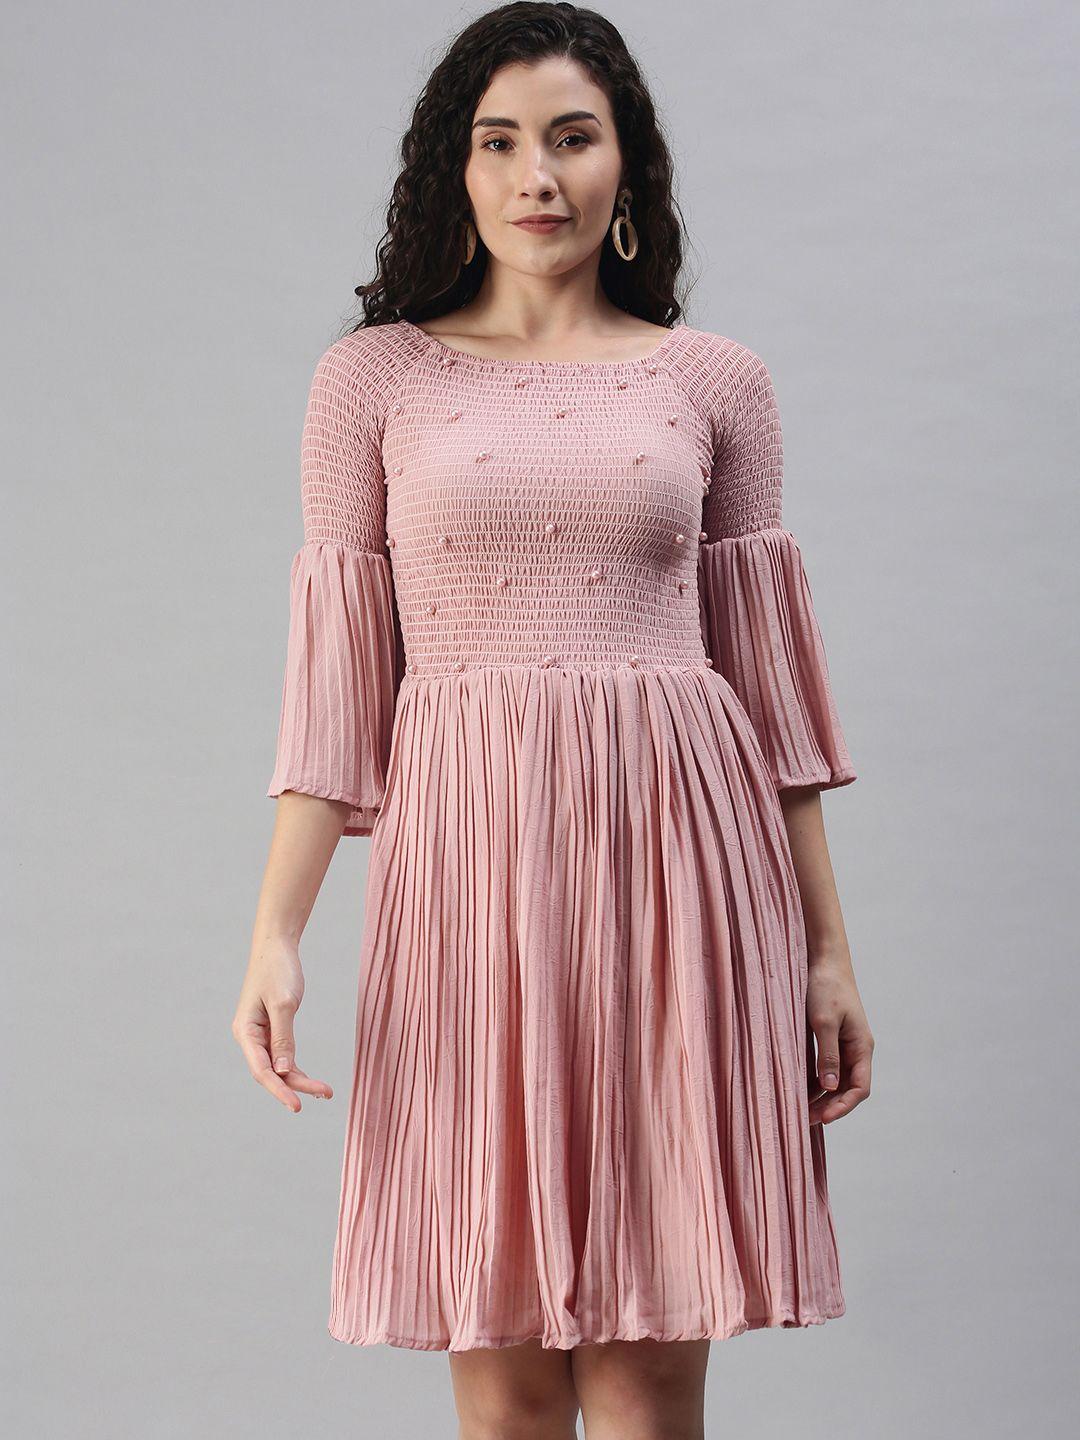 xo love pink georgette dress